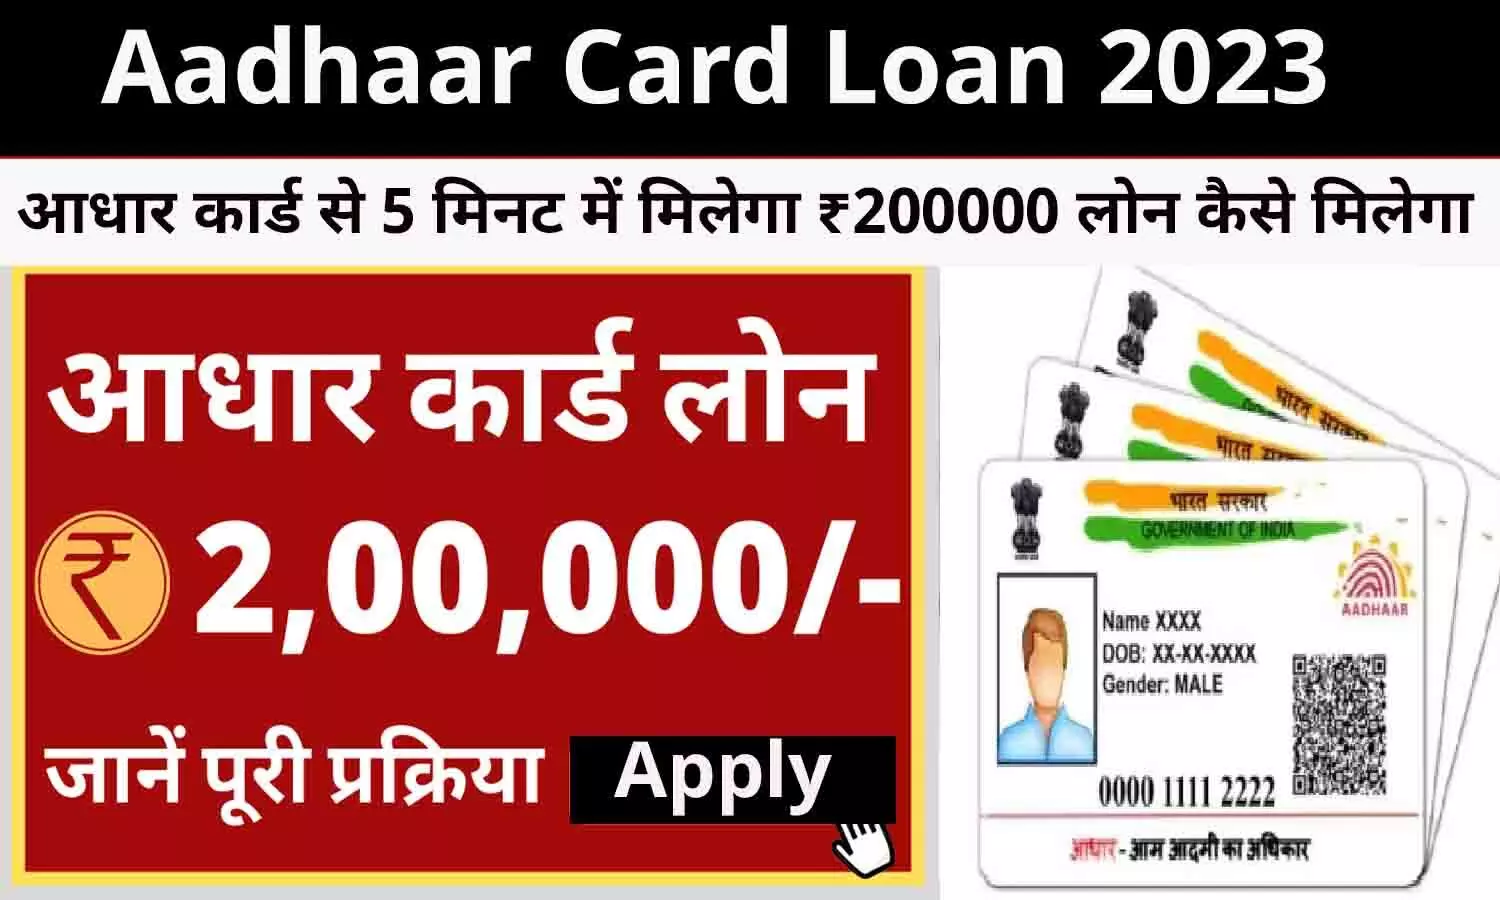 Aadhaar Card Se Loan Kaise Milega: आधार कार्ड से 5 मिनट में मिलेगा ₹200000 लोन कैसे मिलेगा